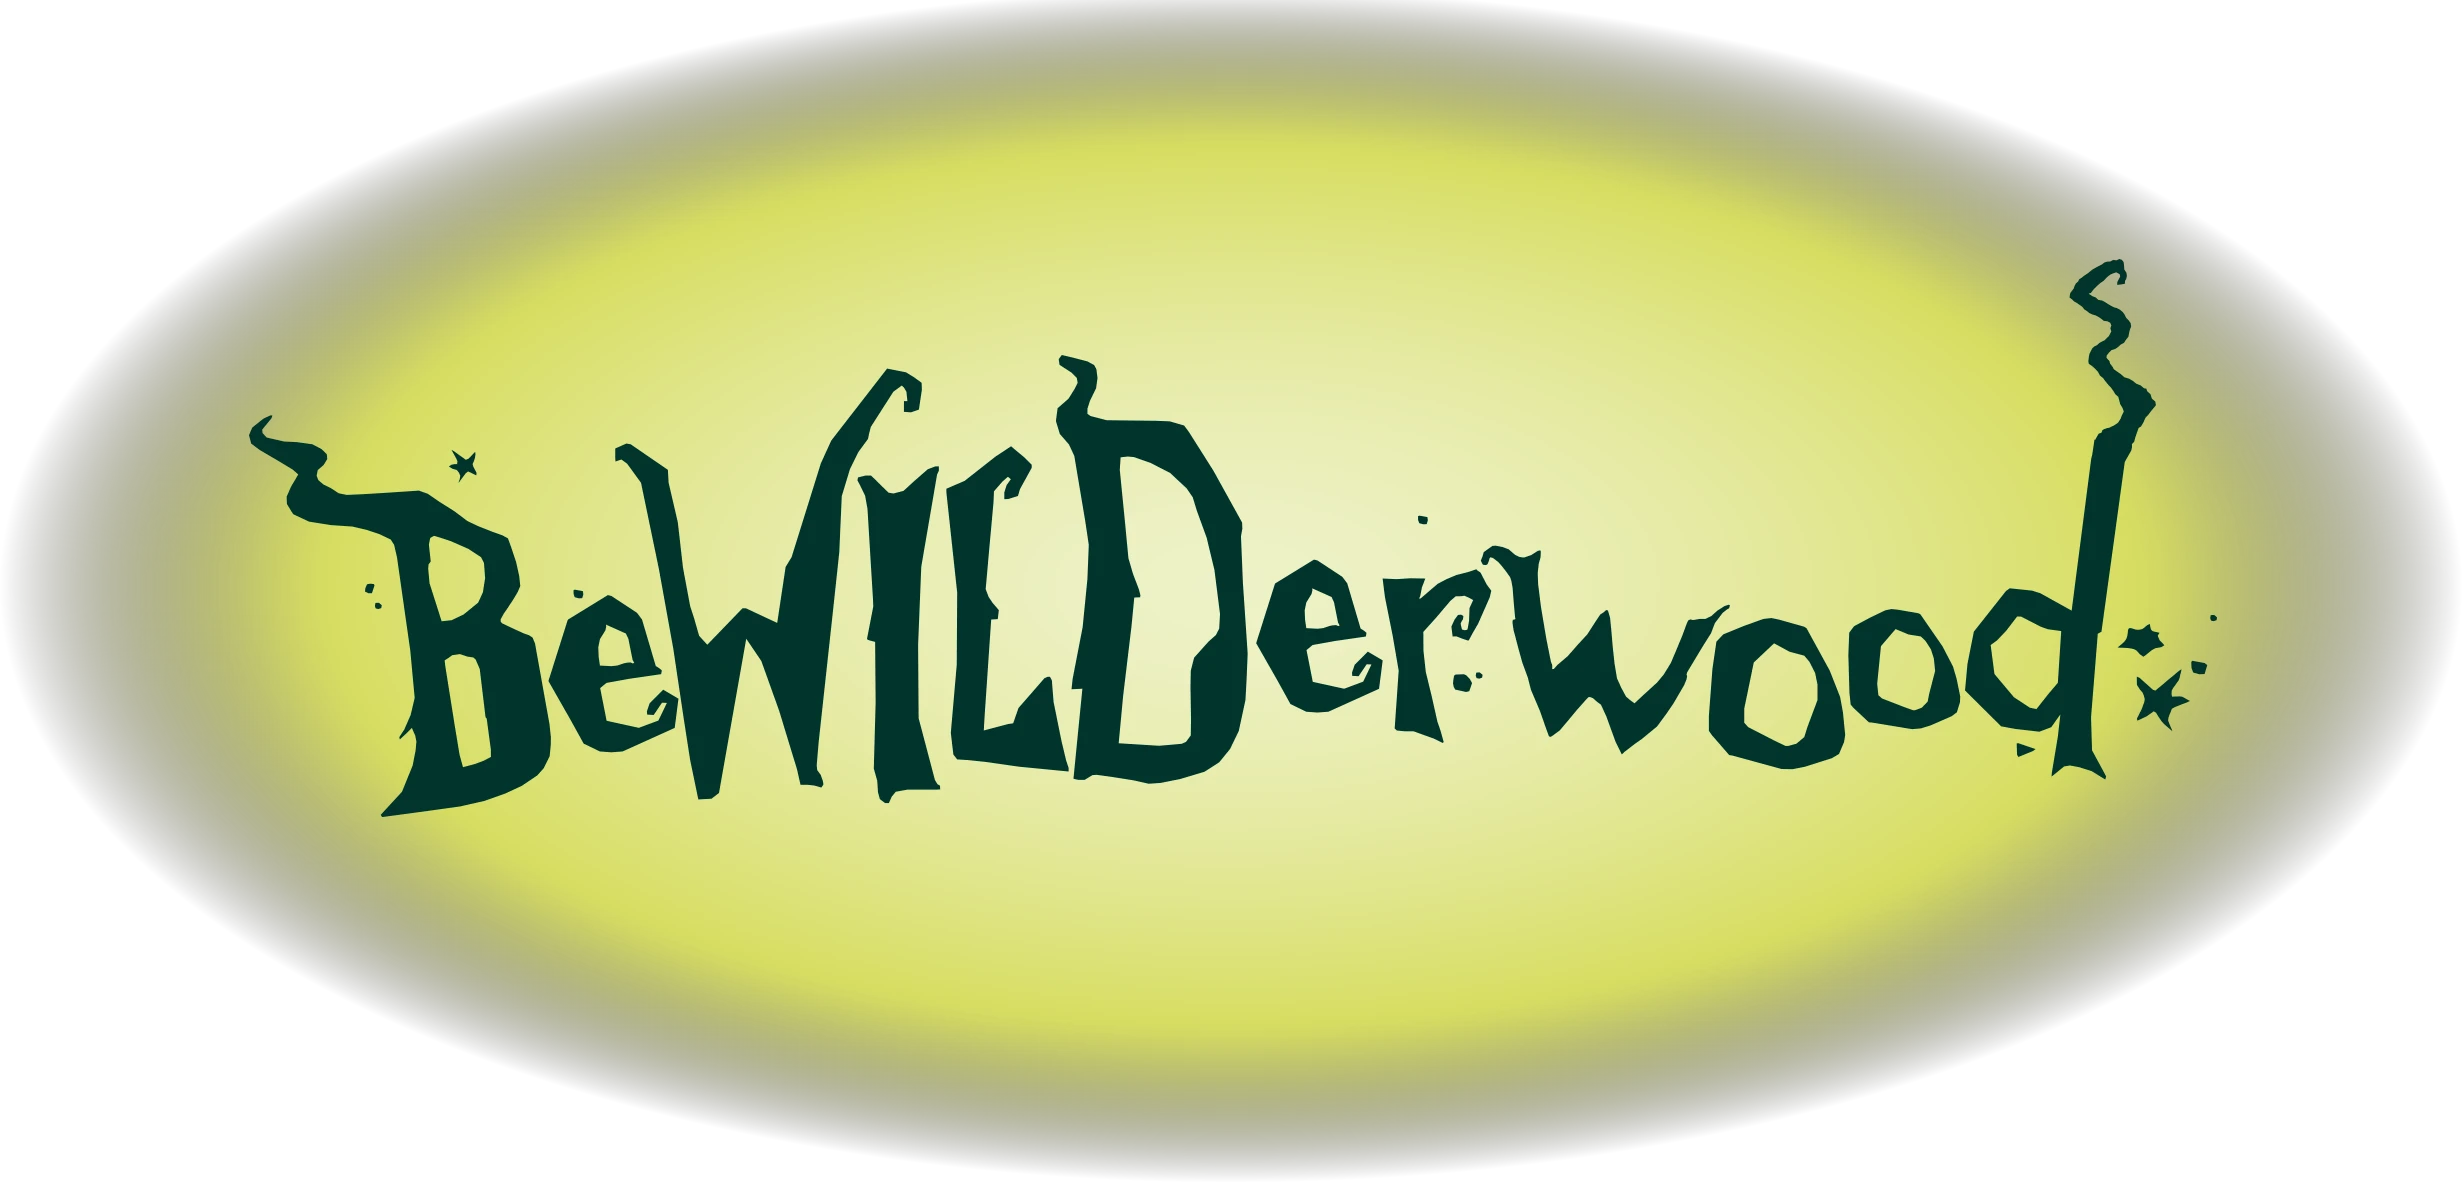  BeWILDerwood Promo Code